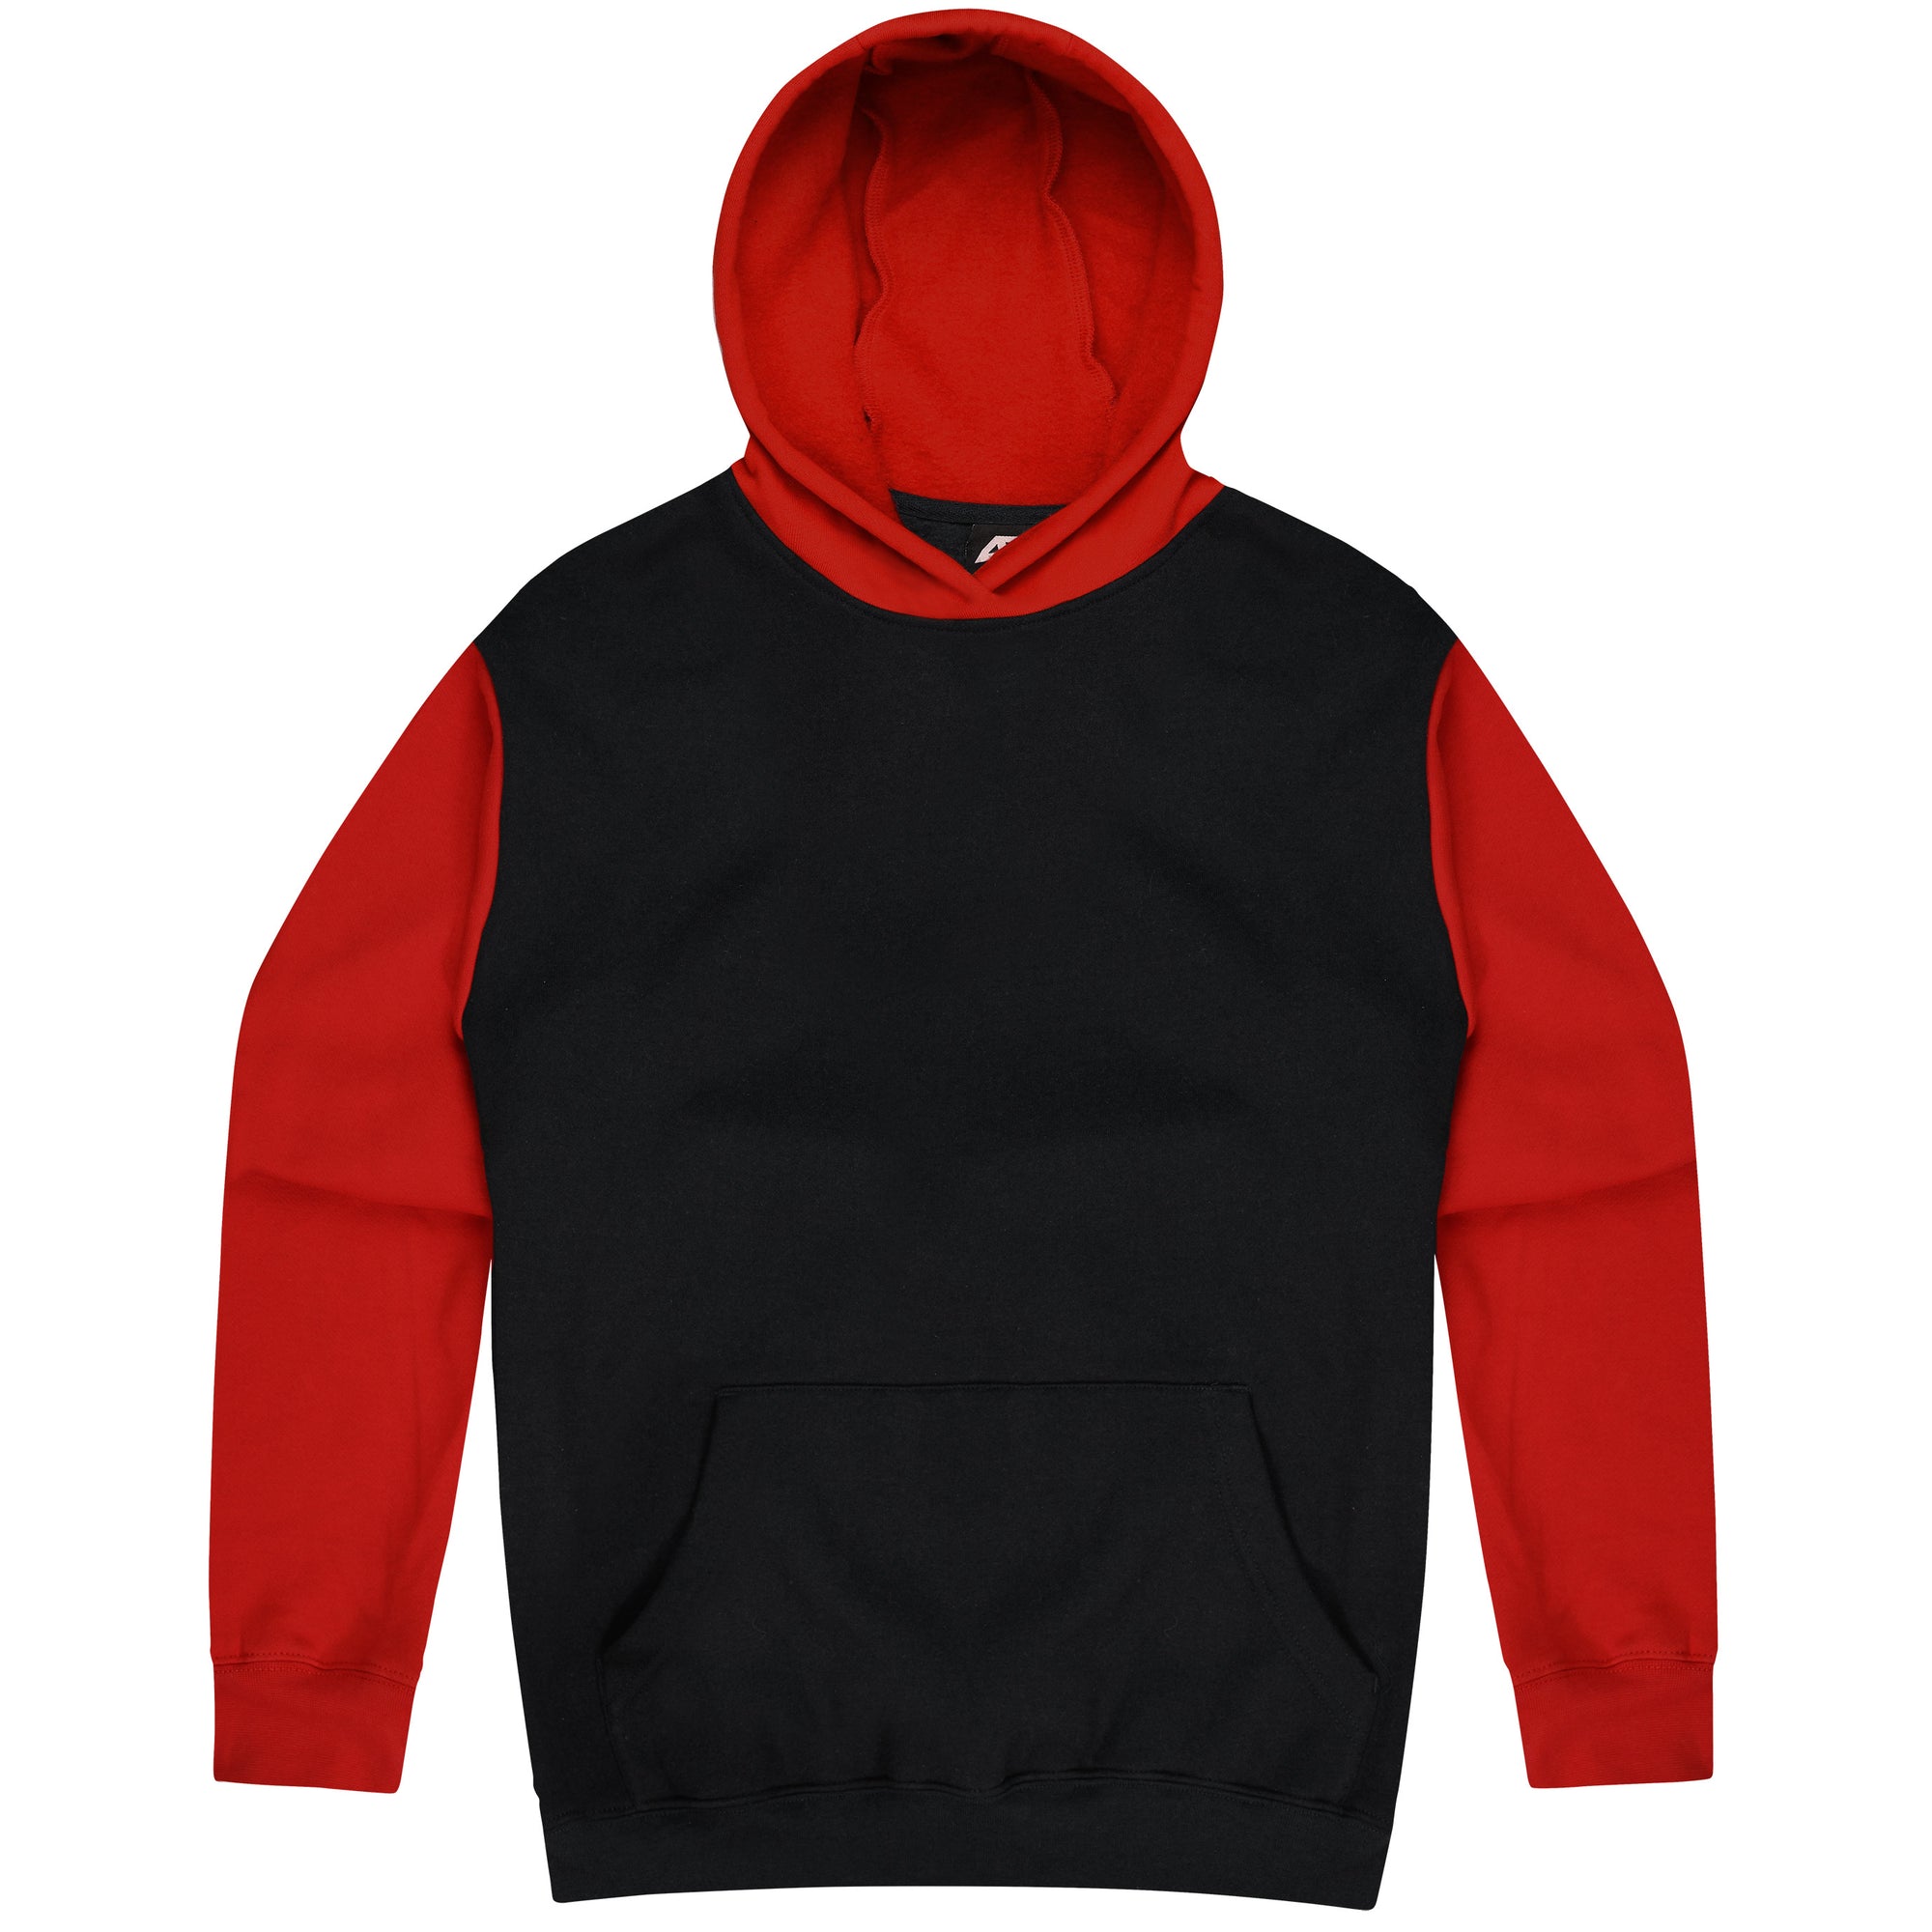 Custom Printed Monash Hoodies - Black/Red